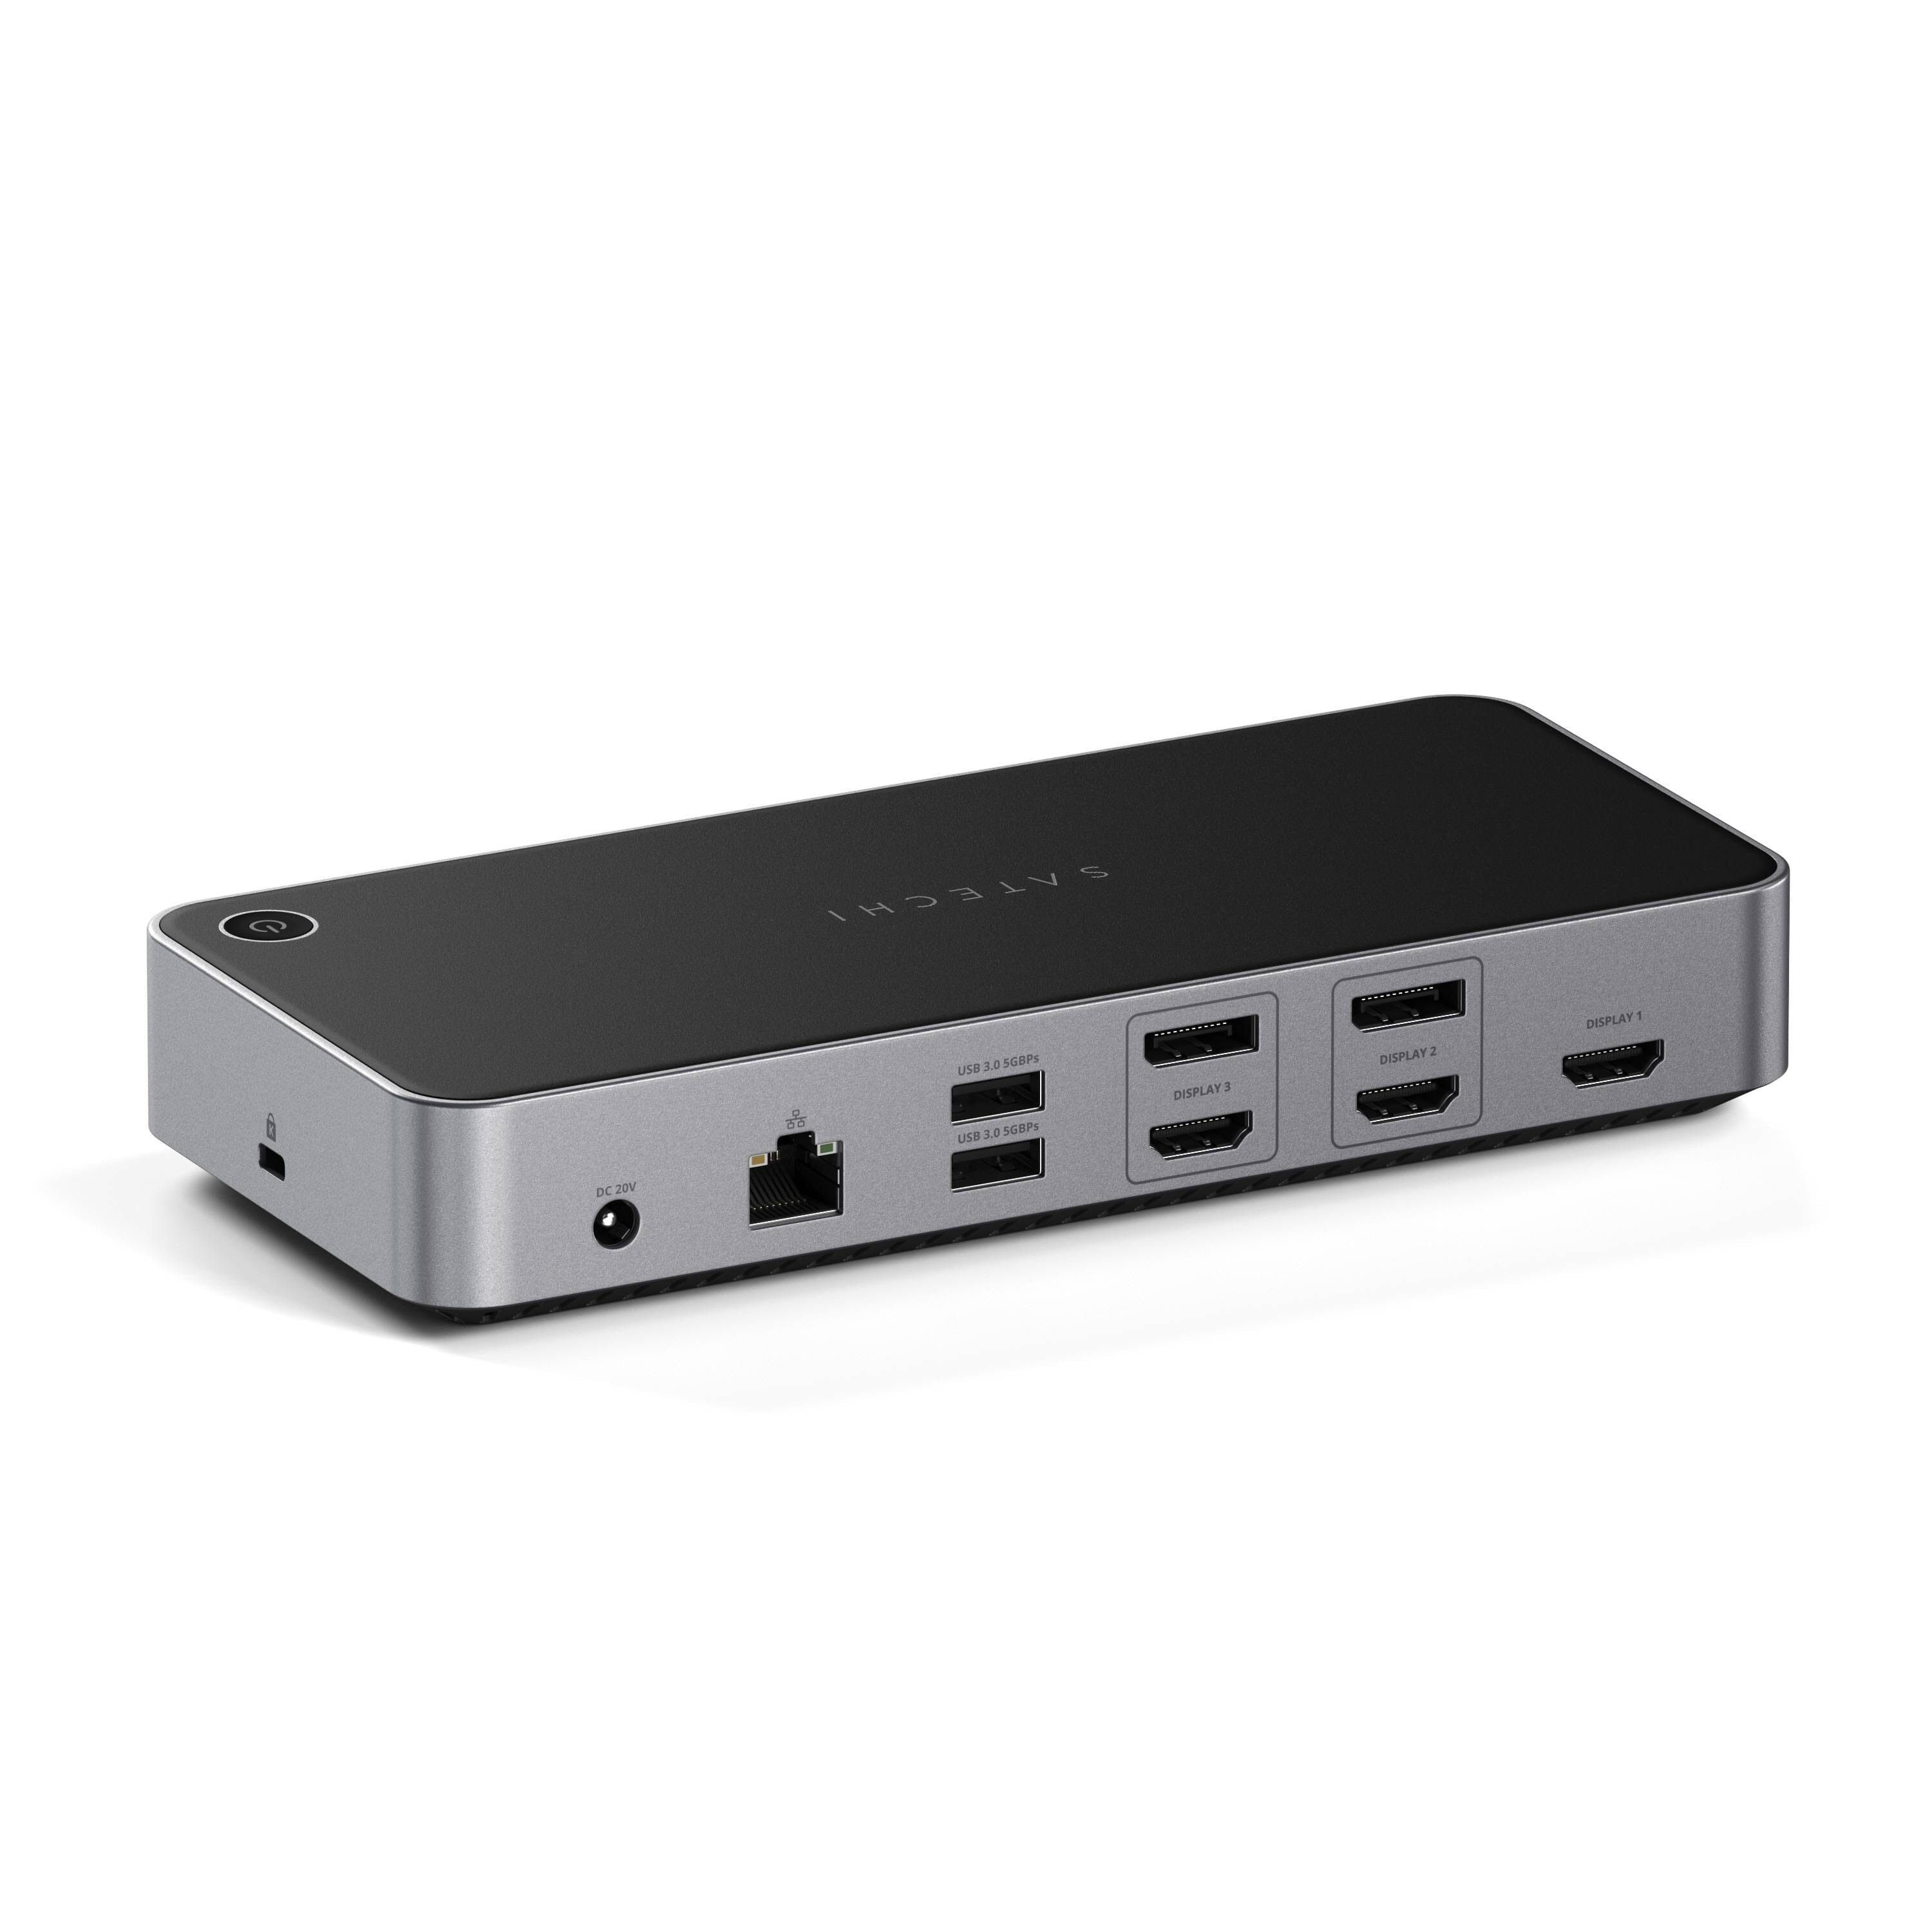 Station d'accueil USB-C 4K, pour 2 ou 3 moniteurs HDMI/DisplayPort,  DisplayLink